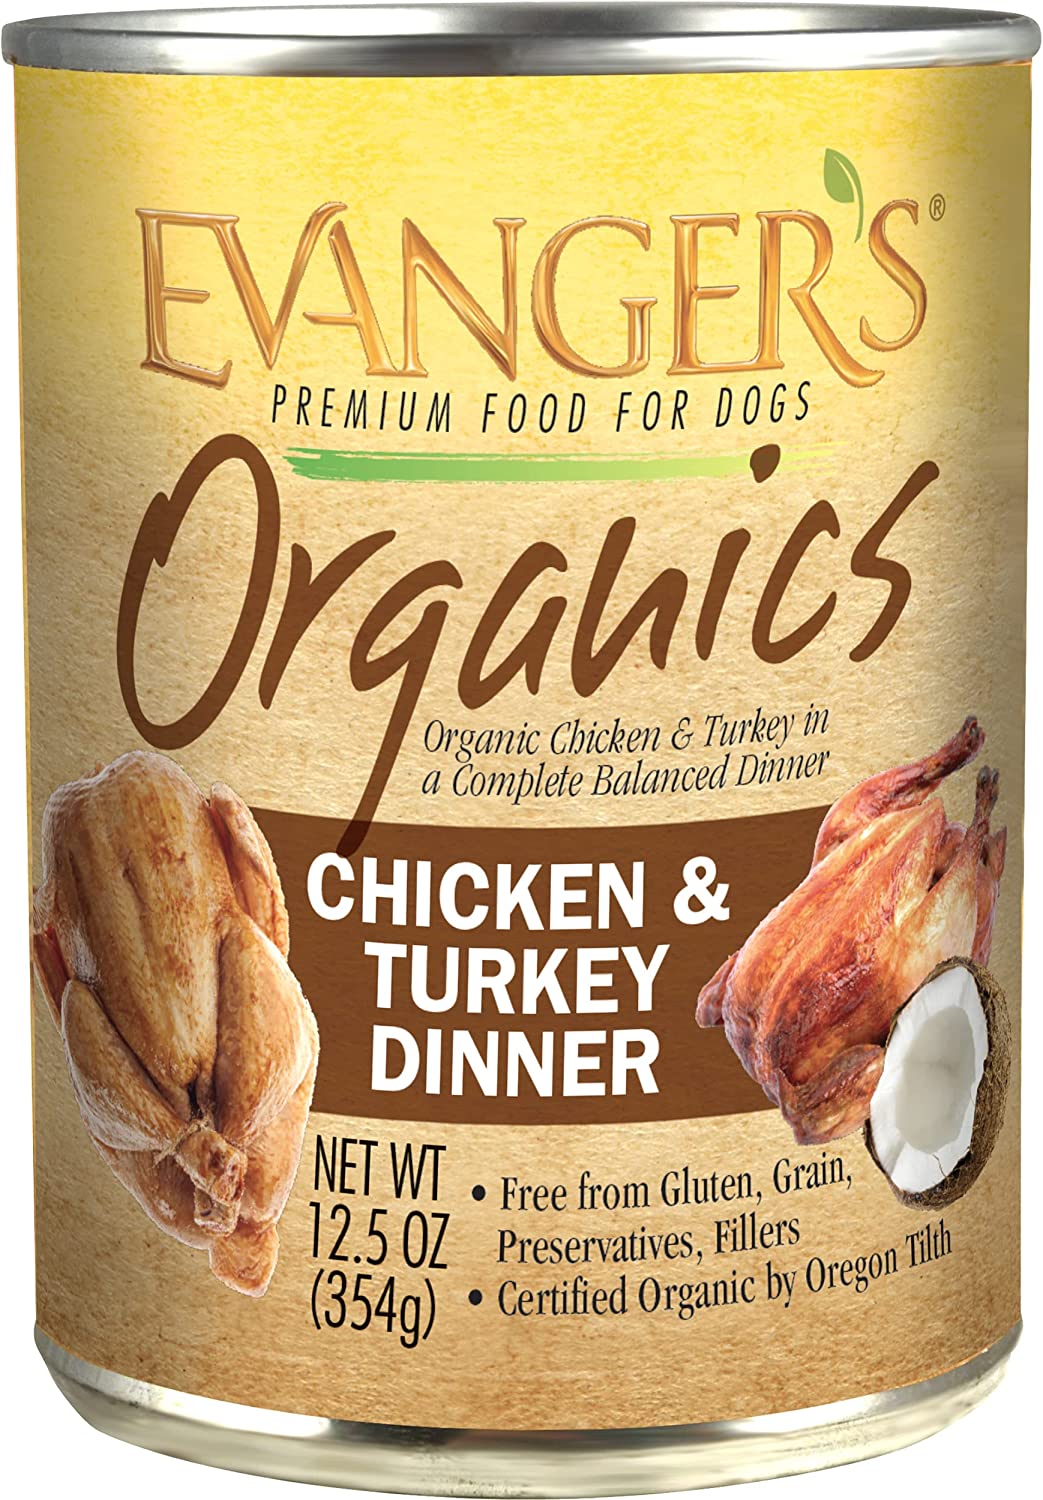 Evanger's Organics Chicken & Turkey Dinner 12.5oz